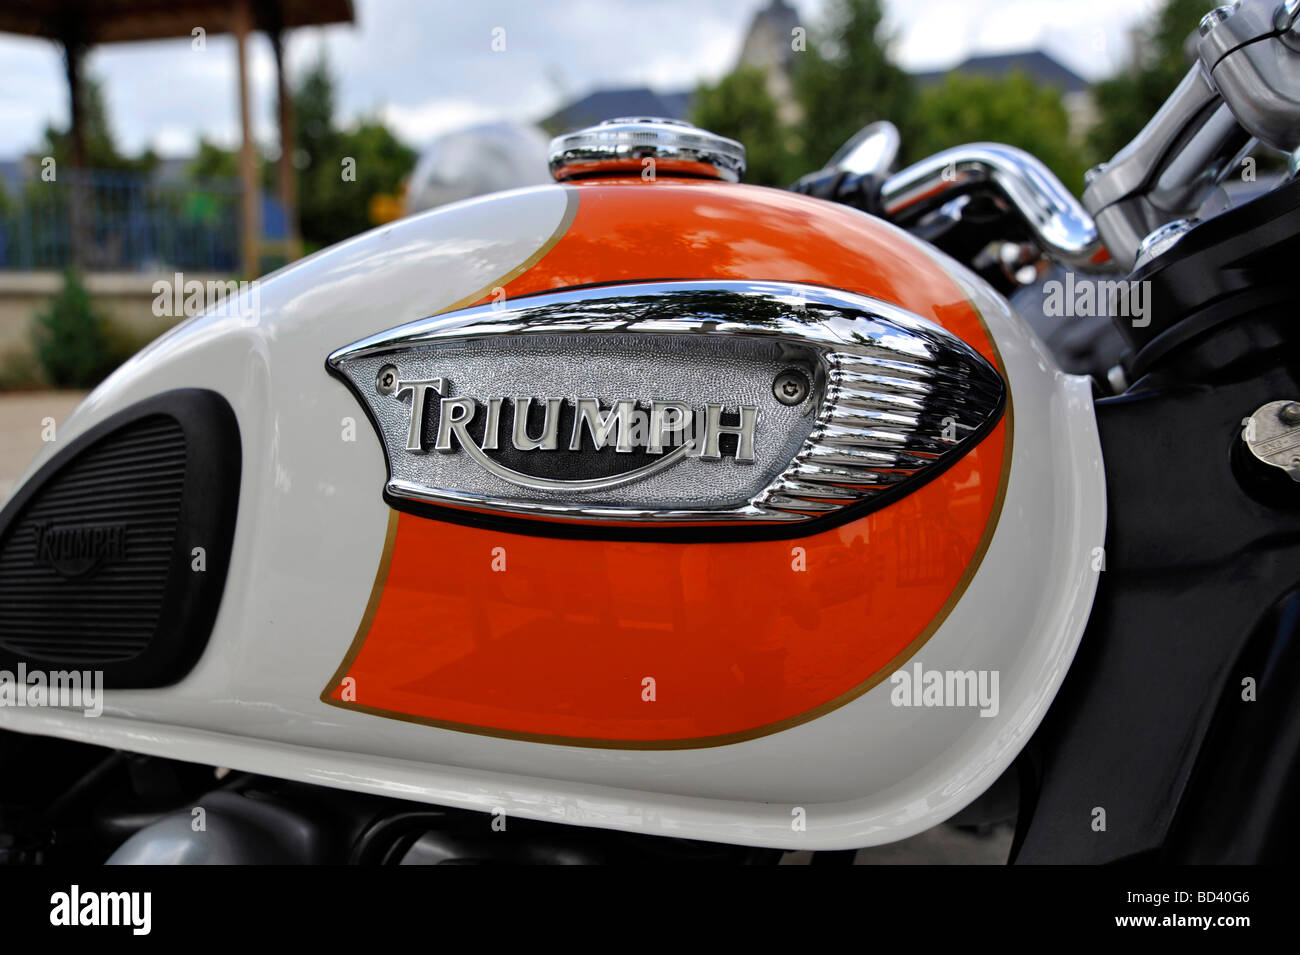 Photo de Gros plan sur un vieux réservoir à essence moto Triumph classique Banque D'Images